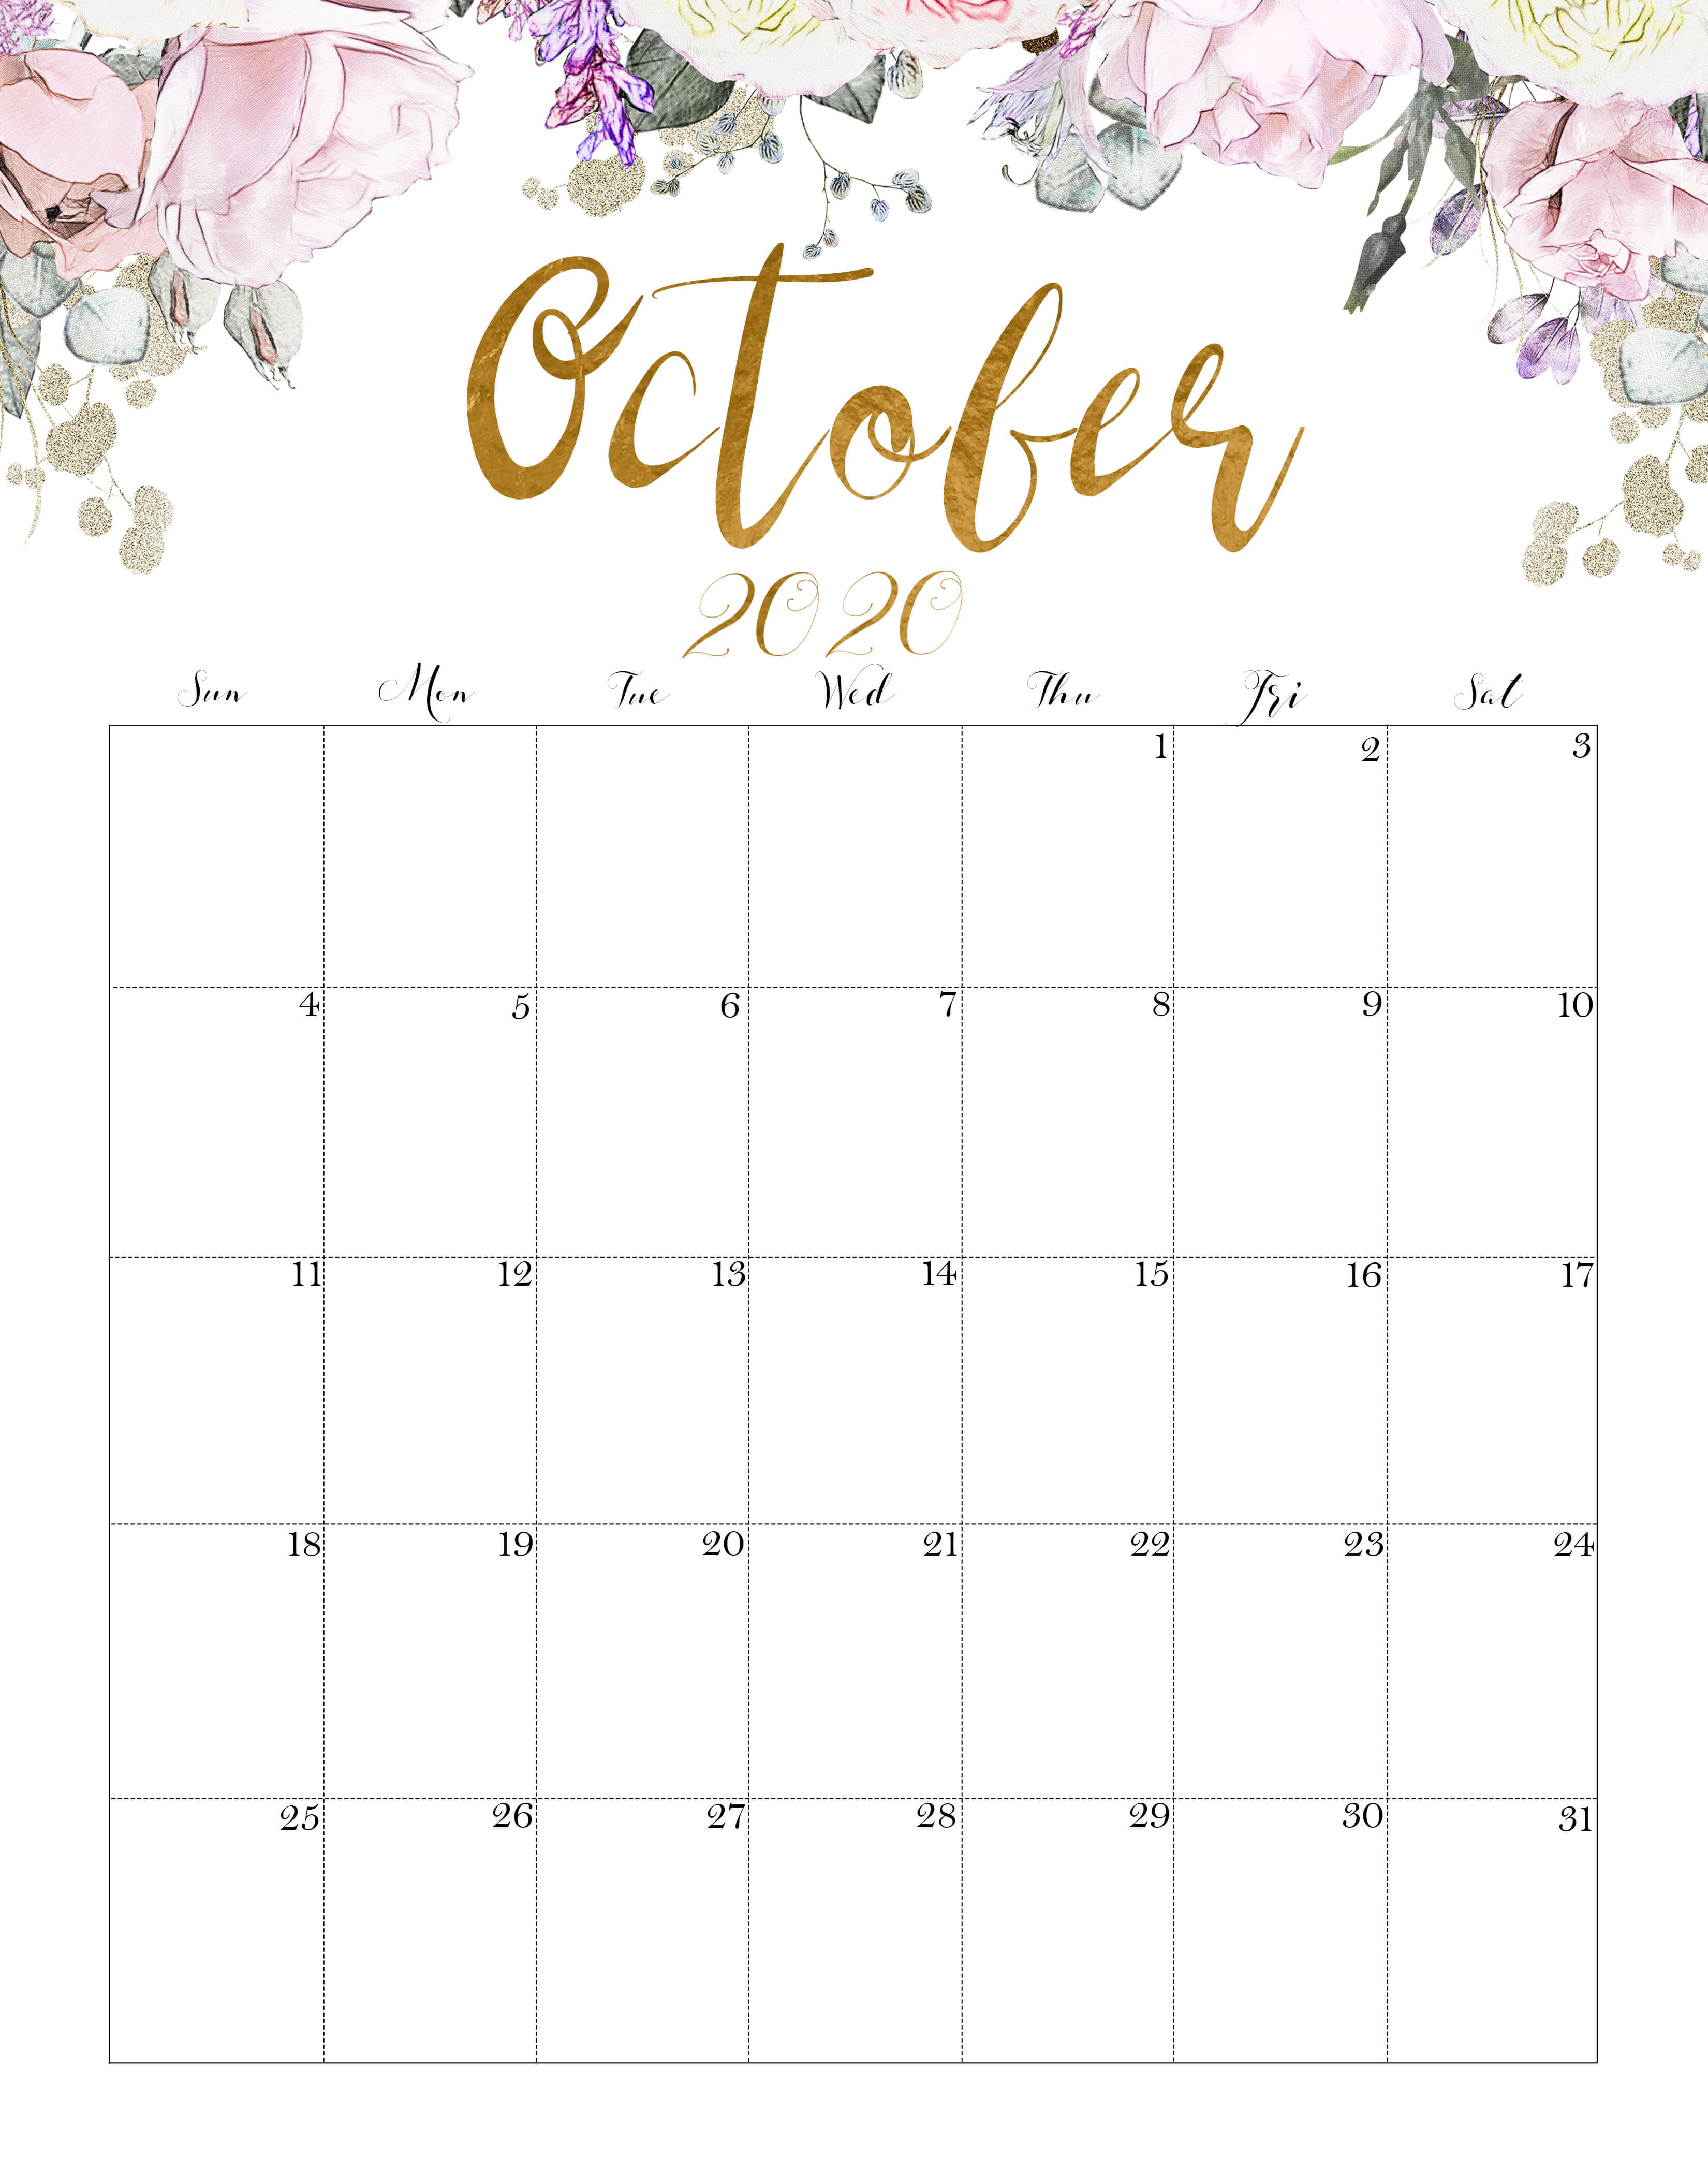 Floral October 2020 Calendar Printable Management Tools Floral October 2020 Calendar Printable